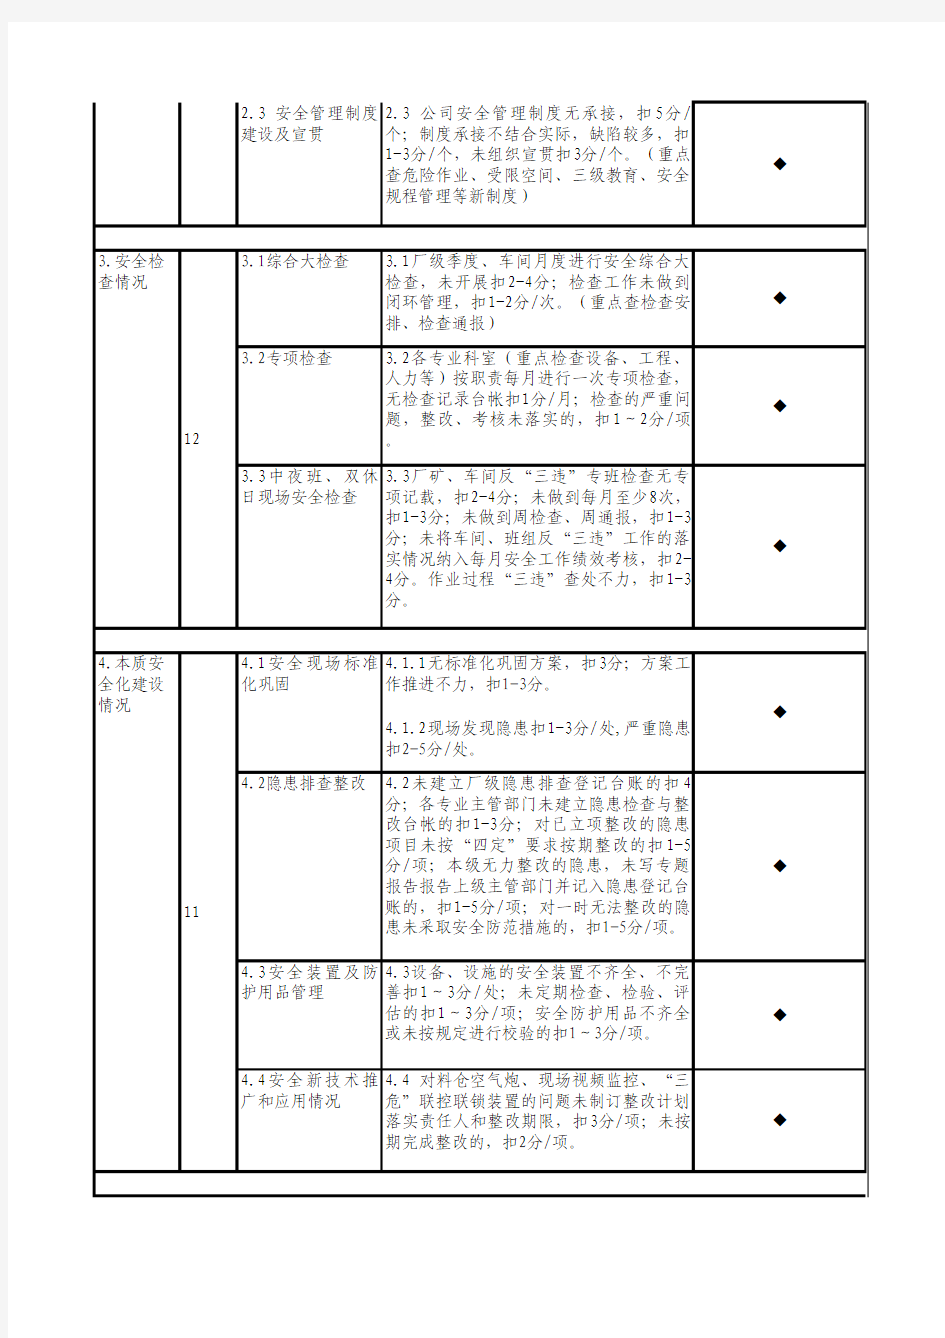 武汉钢铁(集团)公司2010年下半年安全大检查检查表